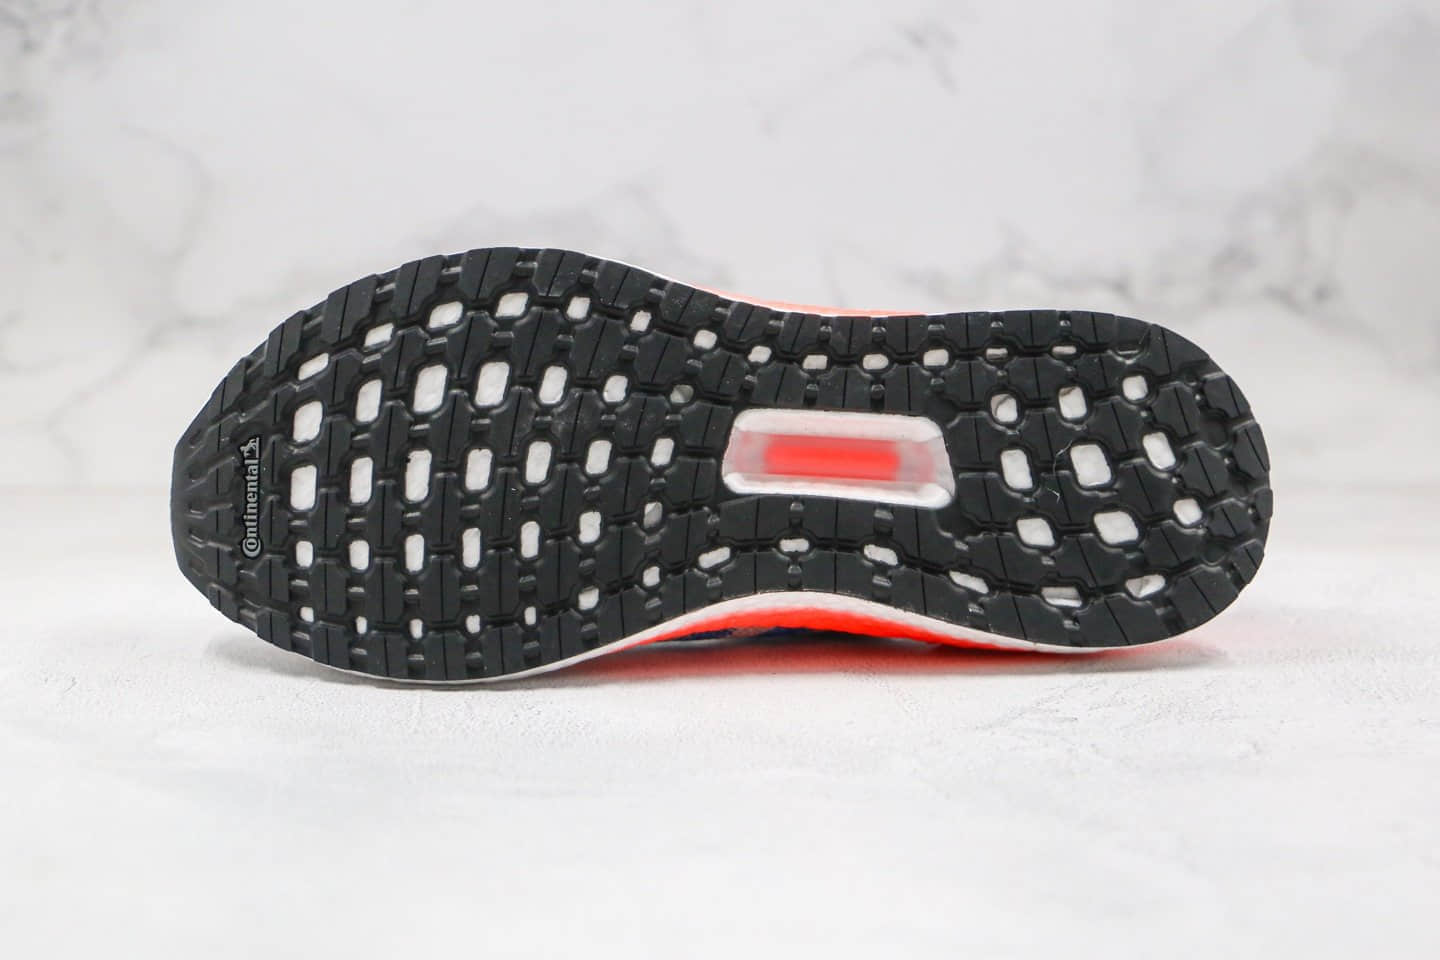 阿迪达斯Adidas Ultra Boost 20 Consortium纯原版本北美限定UB6.0白蓝橙色爆米花跑鞋原厂巴斯夫大底 货号：FY3453